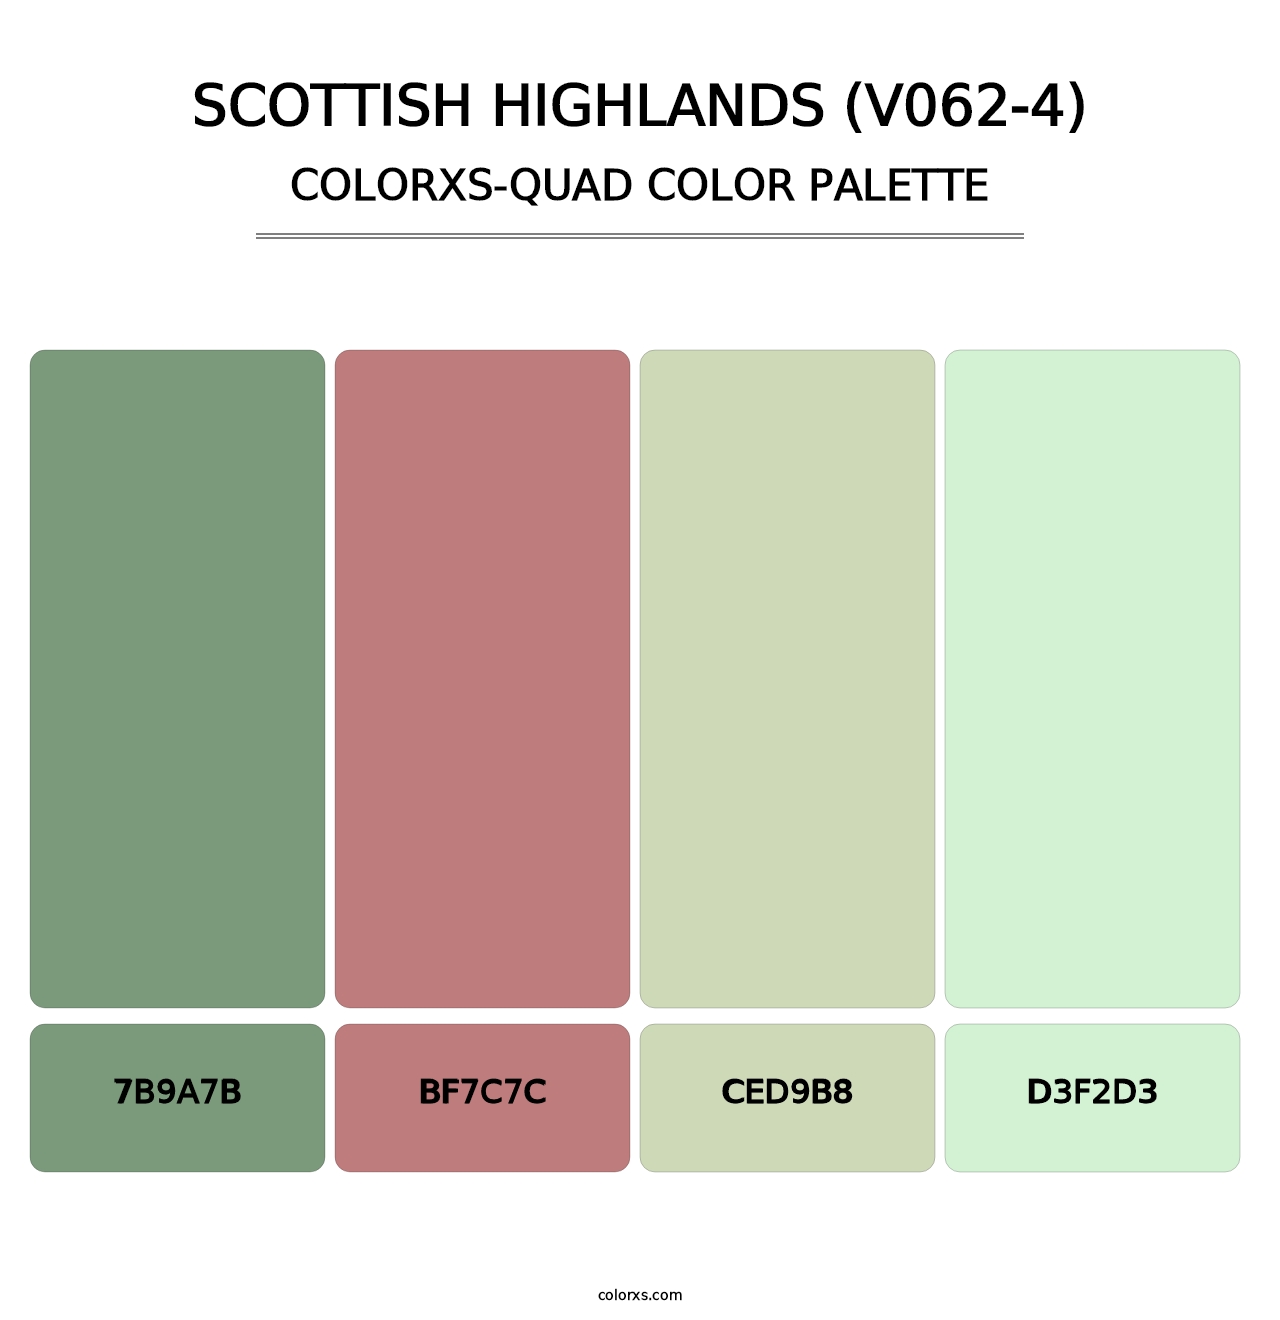 Scottish Highlands (V062-4) - Colorxs Quad Palette